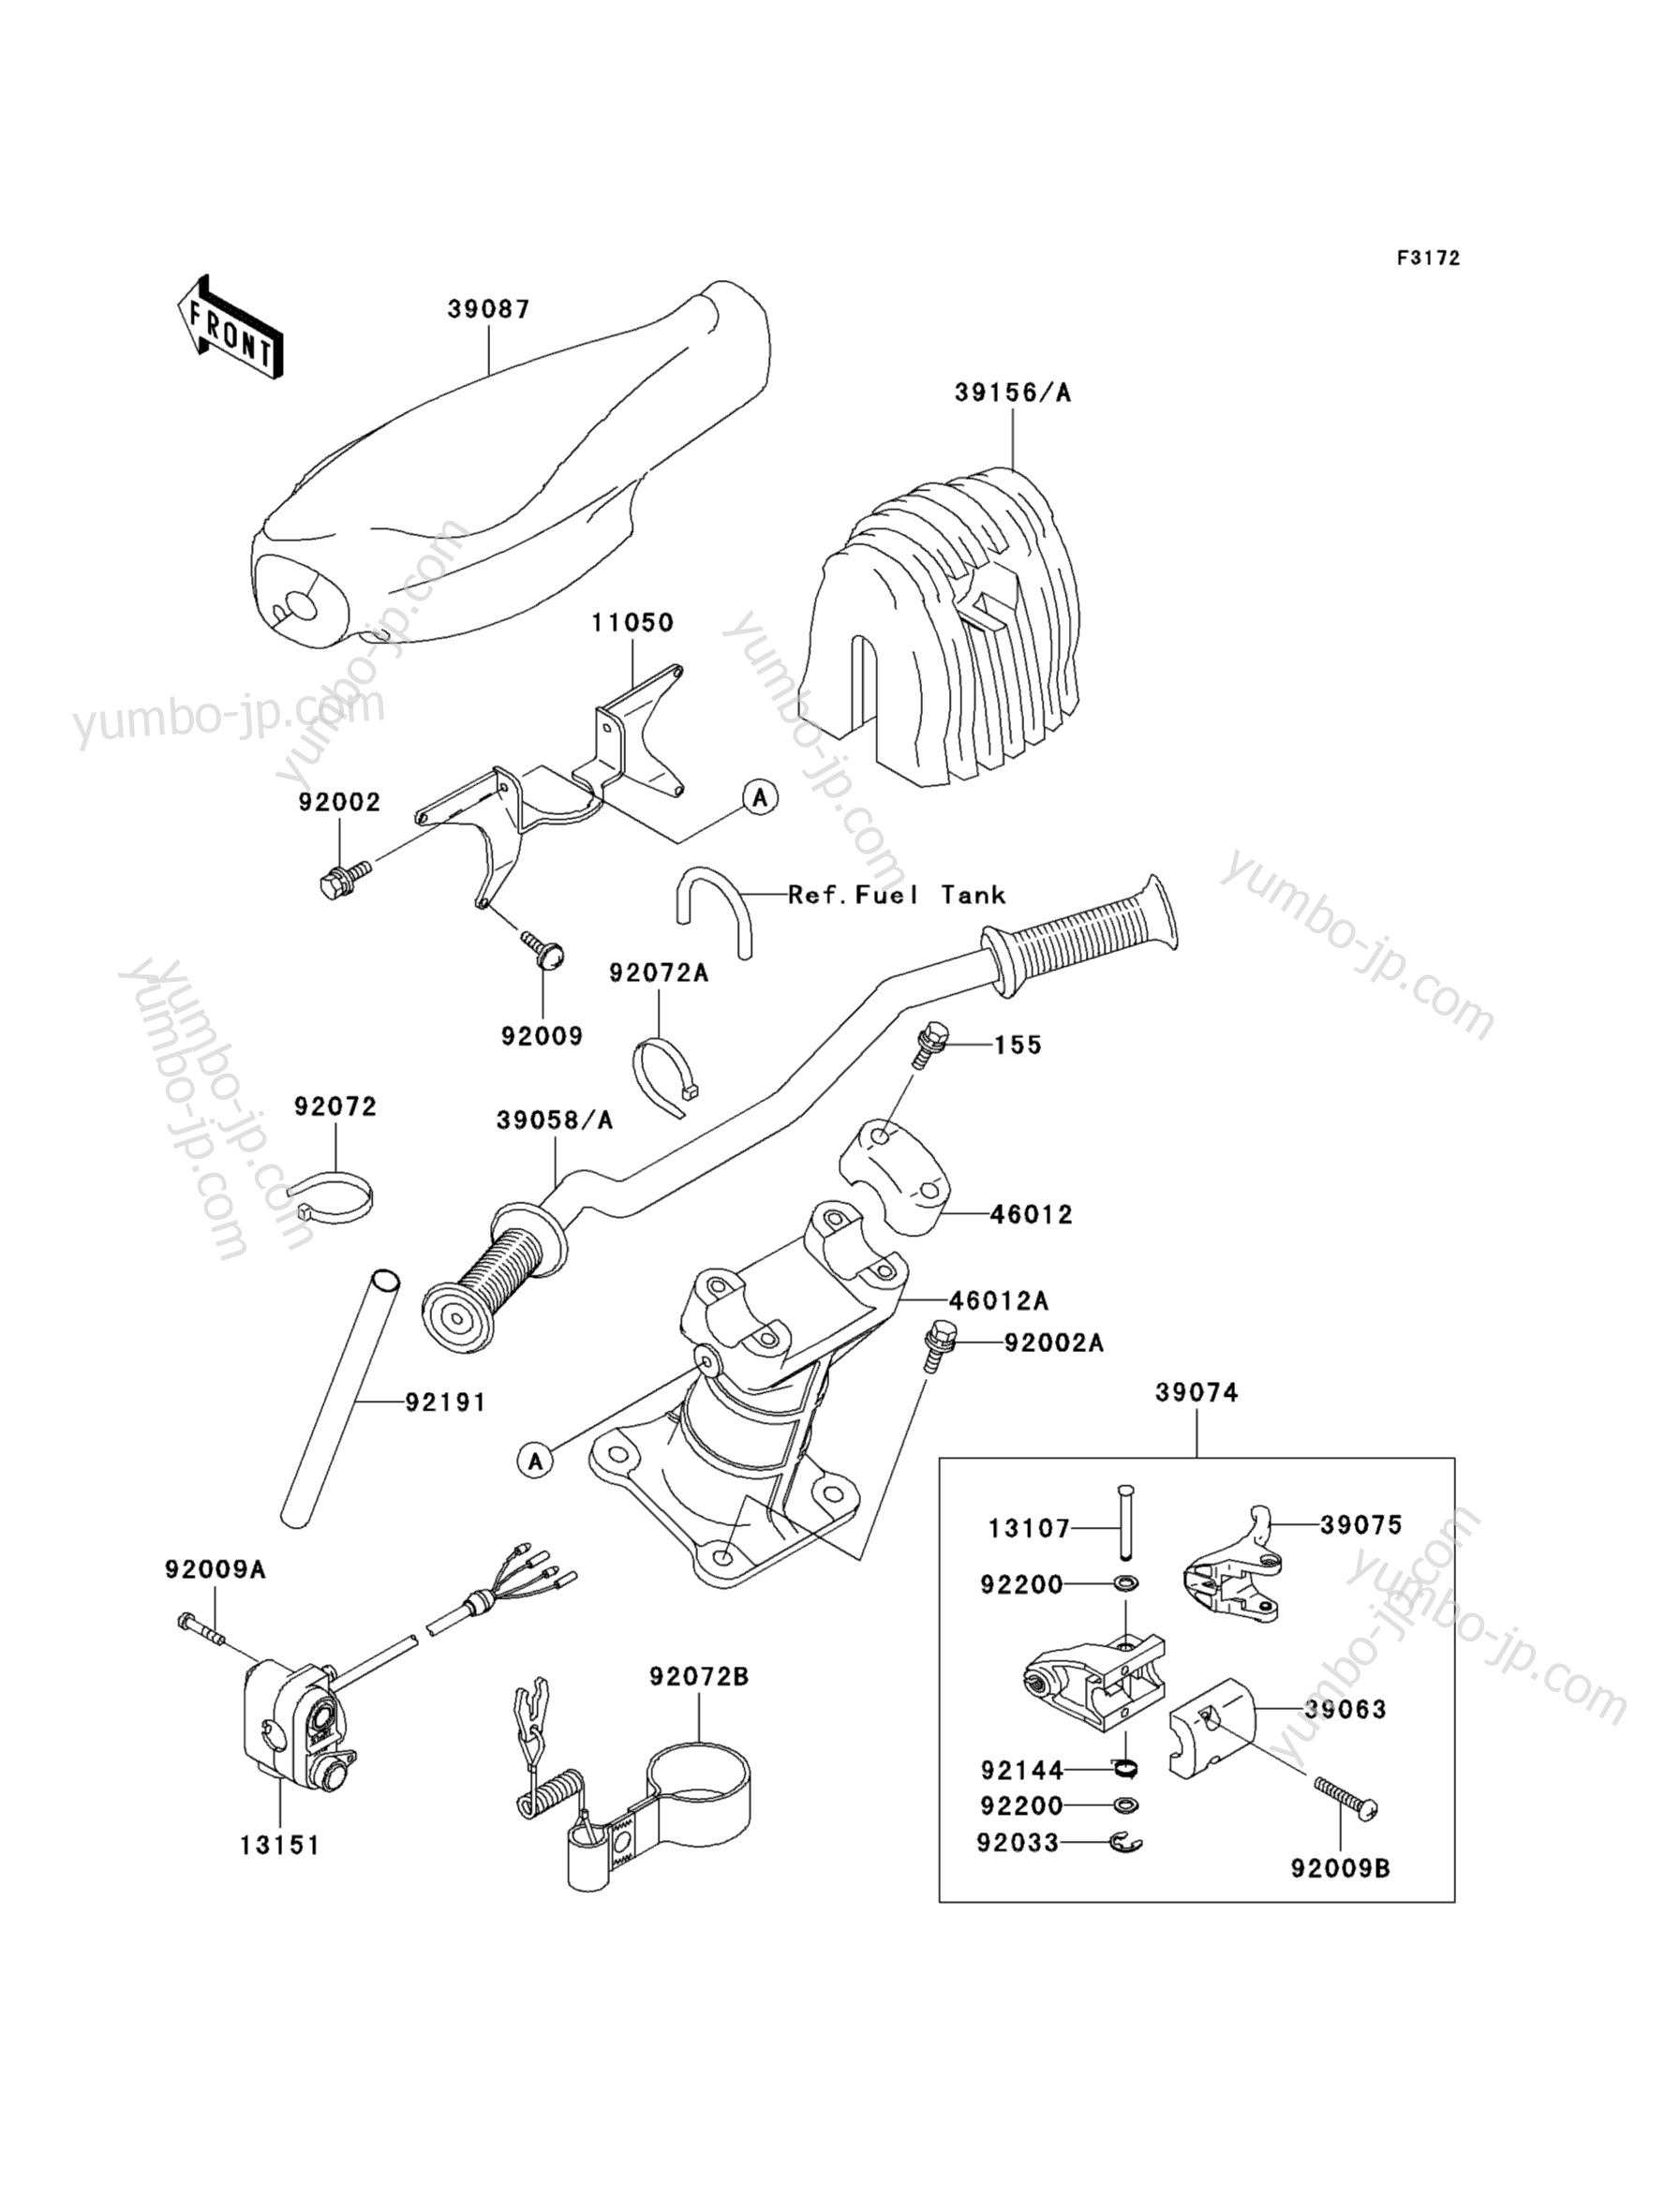 Румпель (рукоятка управления) для гидроциклов KAWASAKI JET SKI 900 STX (JT900-C1) 2001 г.